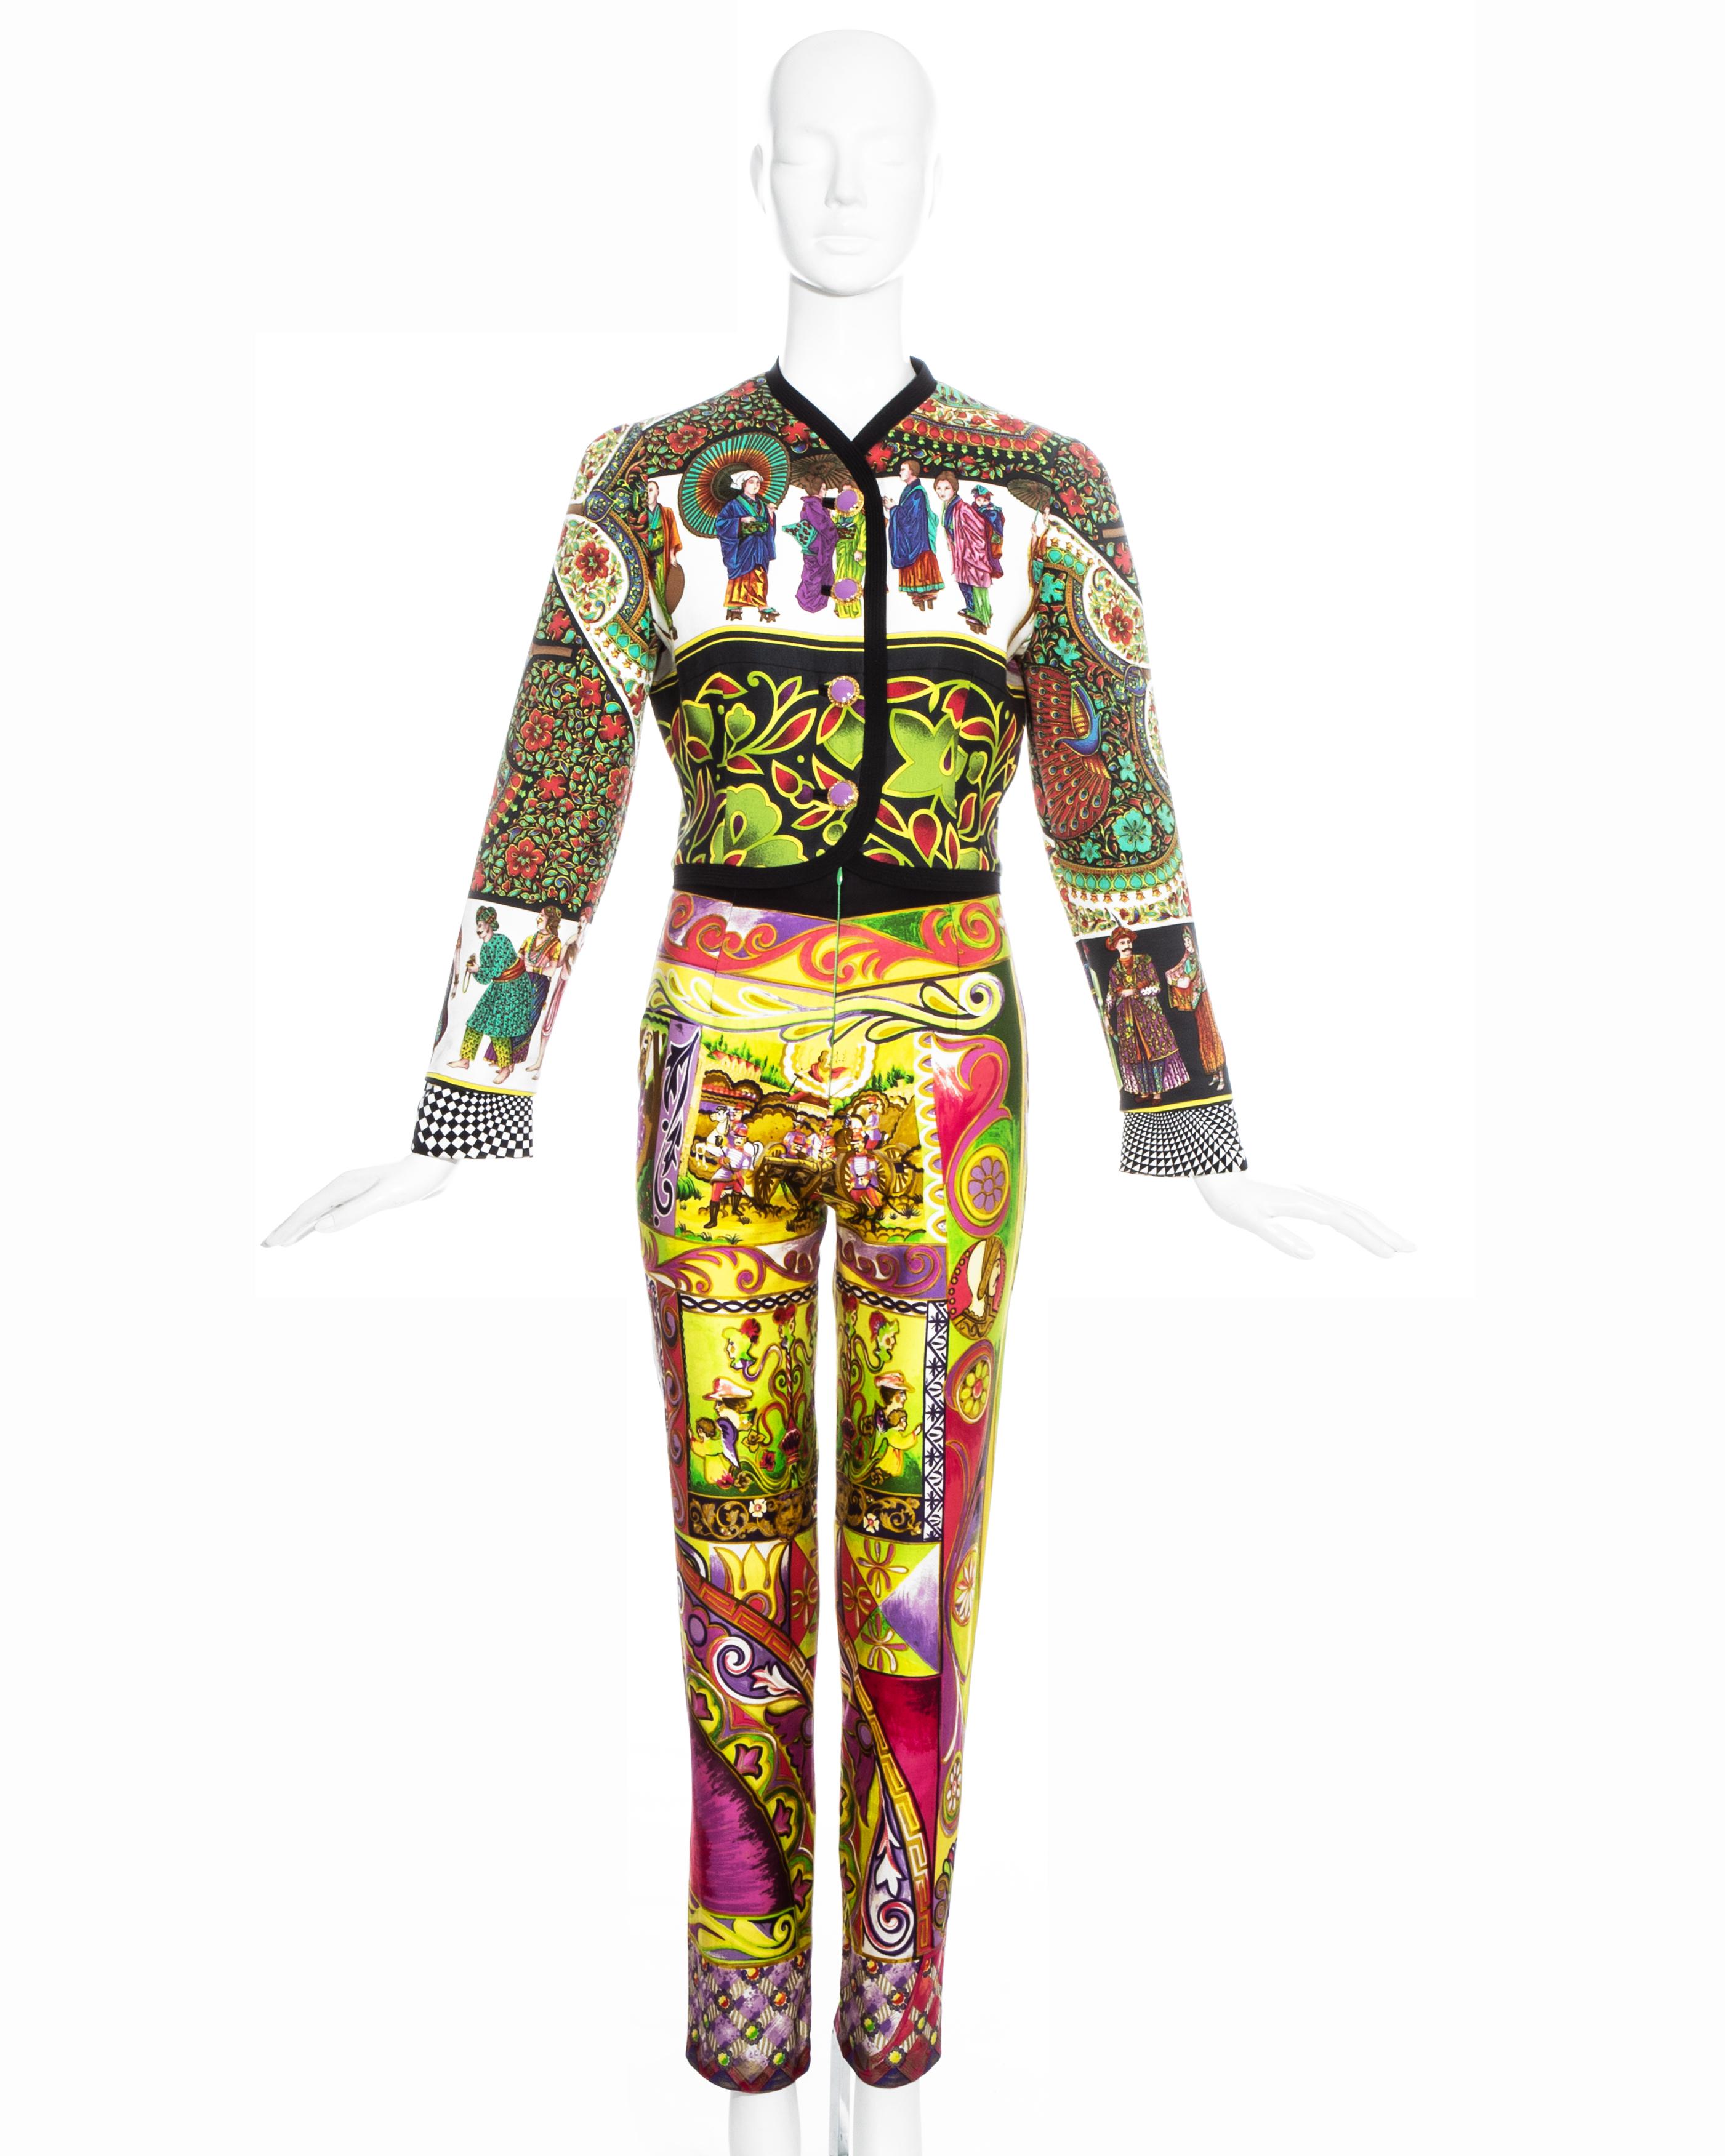 Costume pantalon en soie multicolore Gianni Versace.

Printemps-été 1992